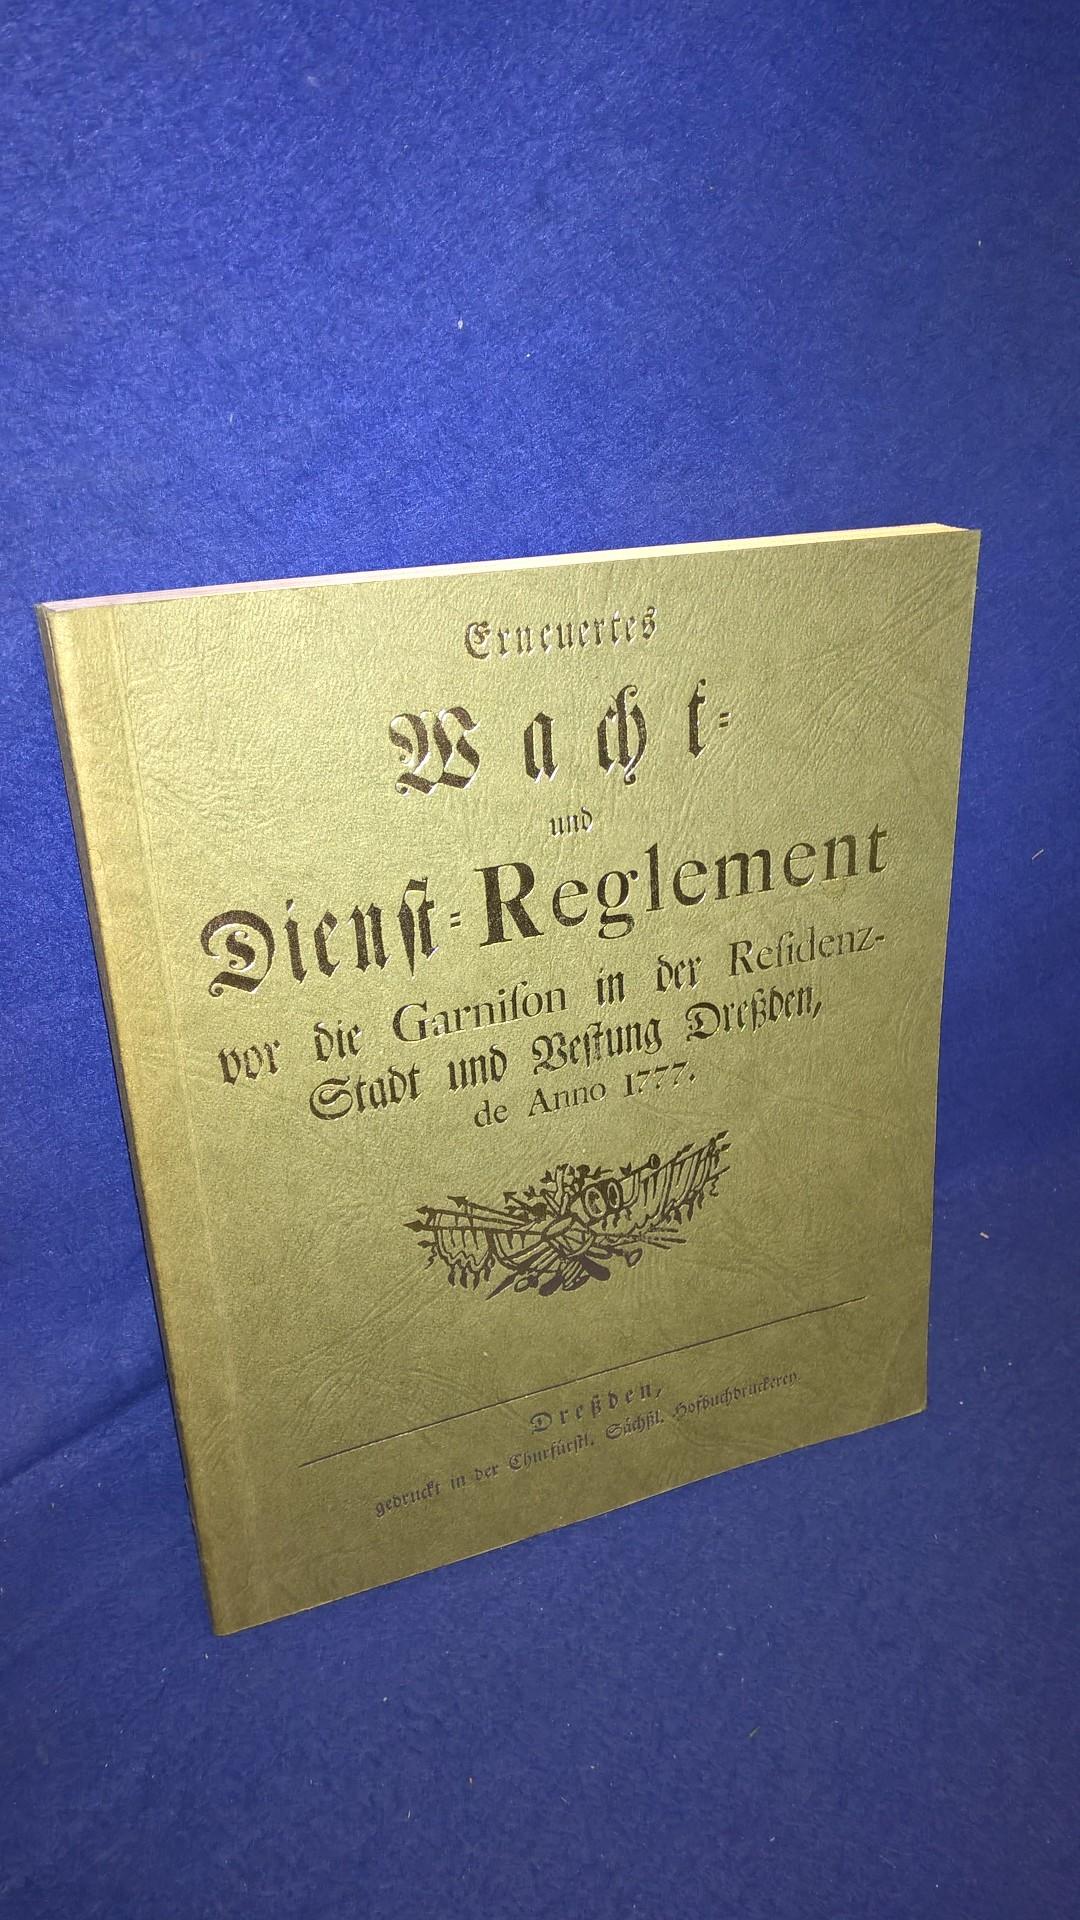 Erneuertes Macht- und Dienst-Reglement vor die Garnison in der Residenz-Stadt und Vestung Dreßden, de Anno 1777.Nachdruck der Orginal-Ausgabe!